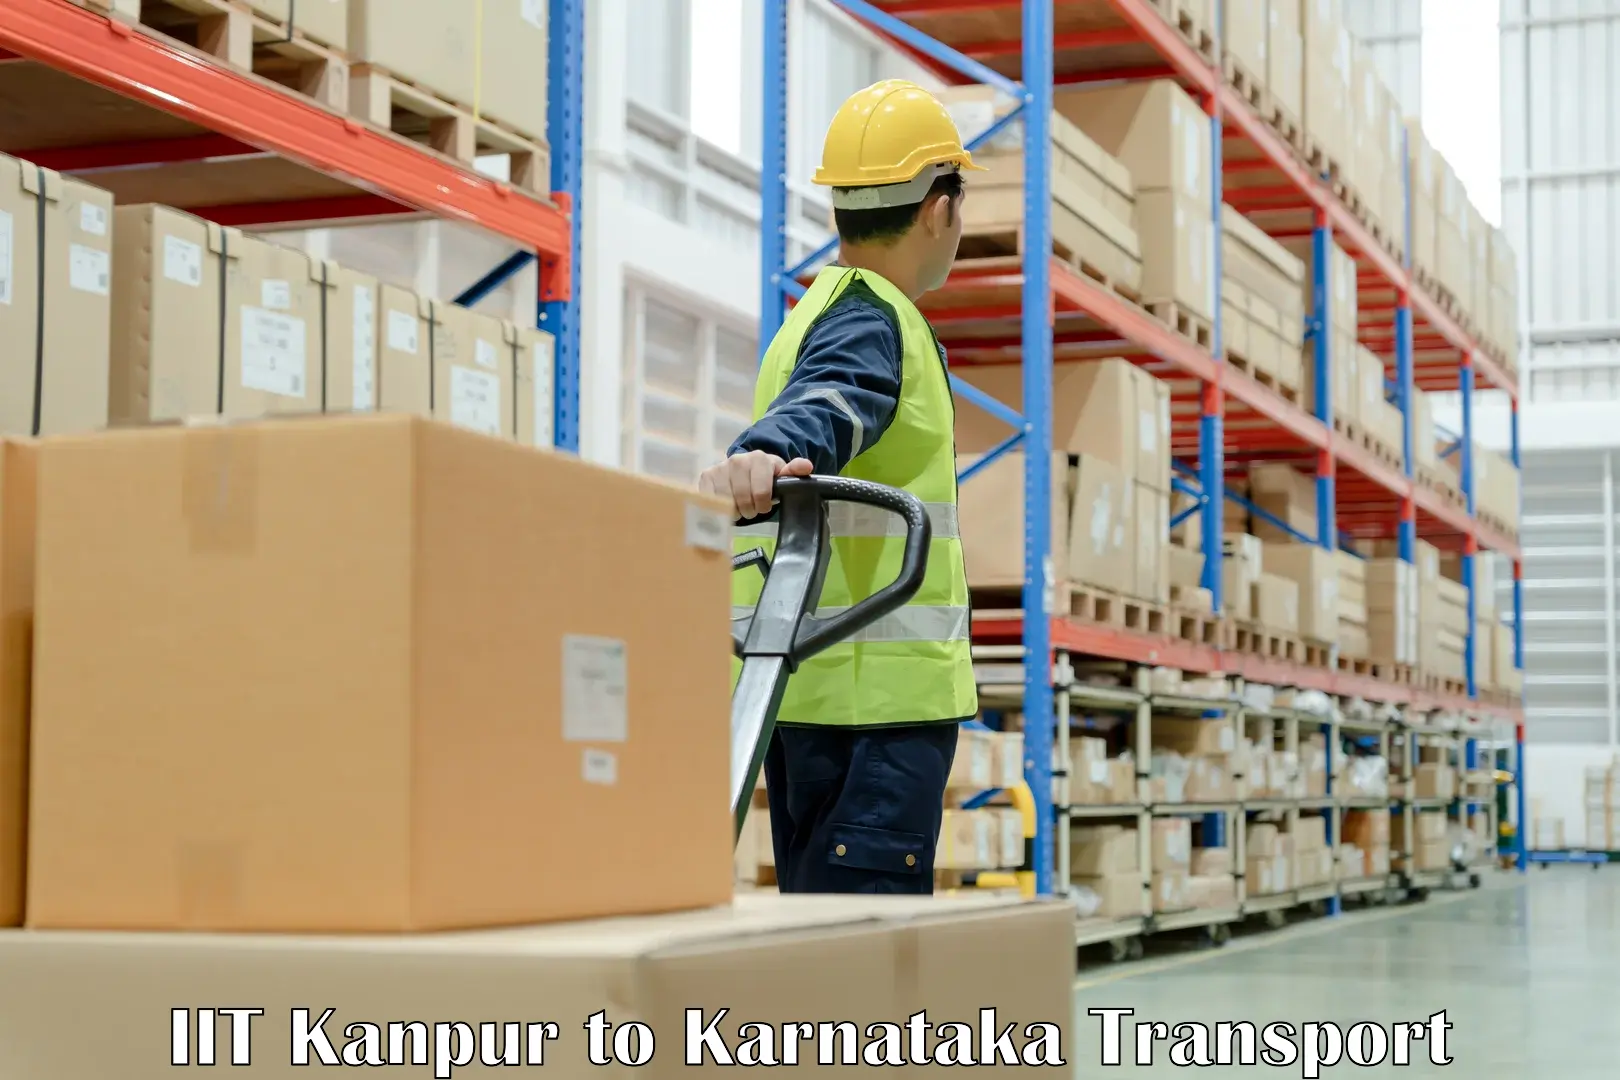 International cargo transportation services IIT Kanpur to Kanjarakatte